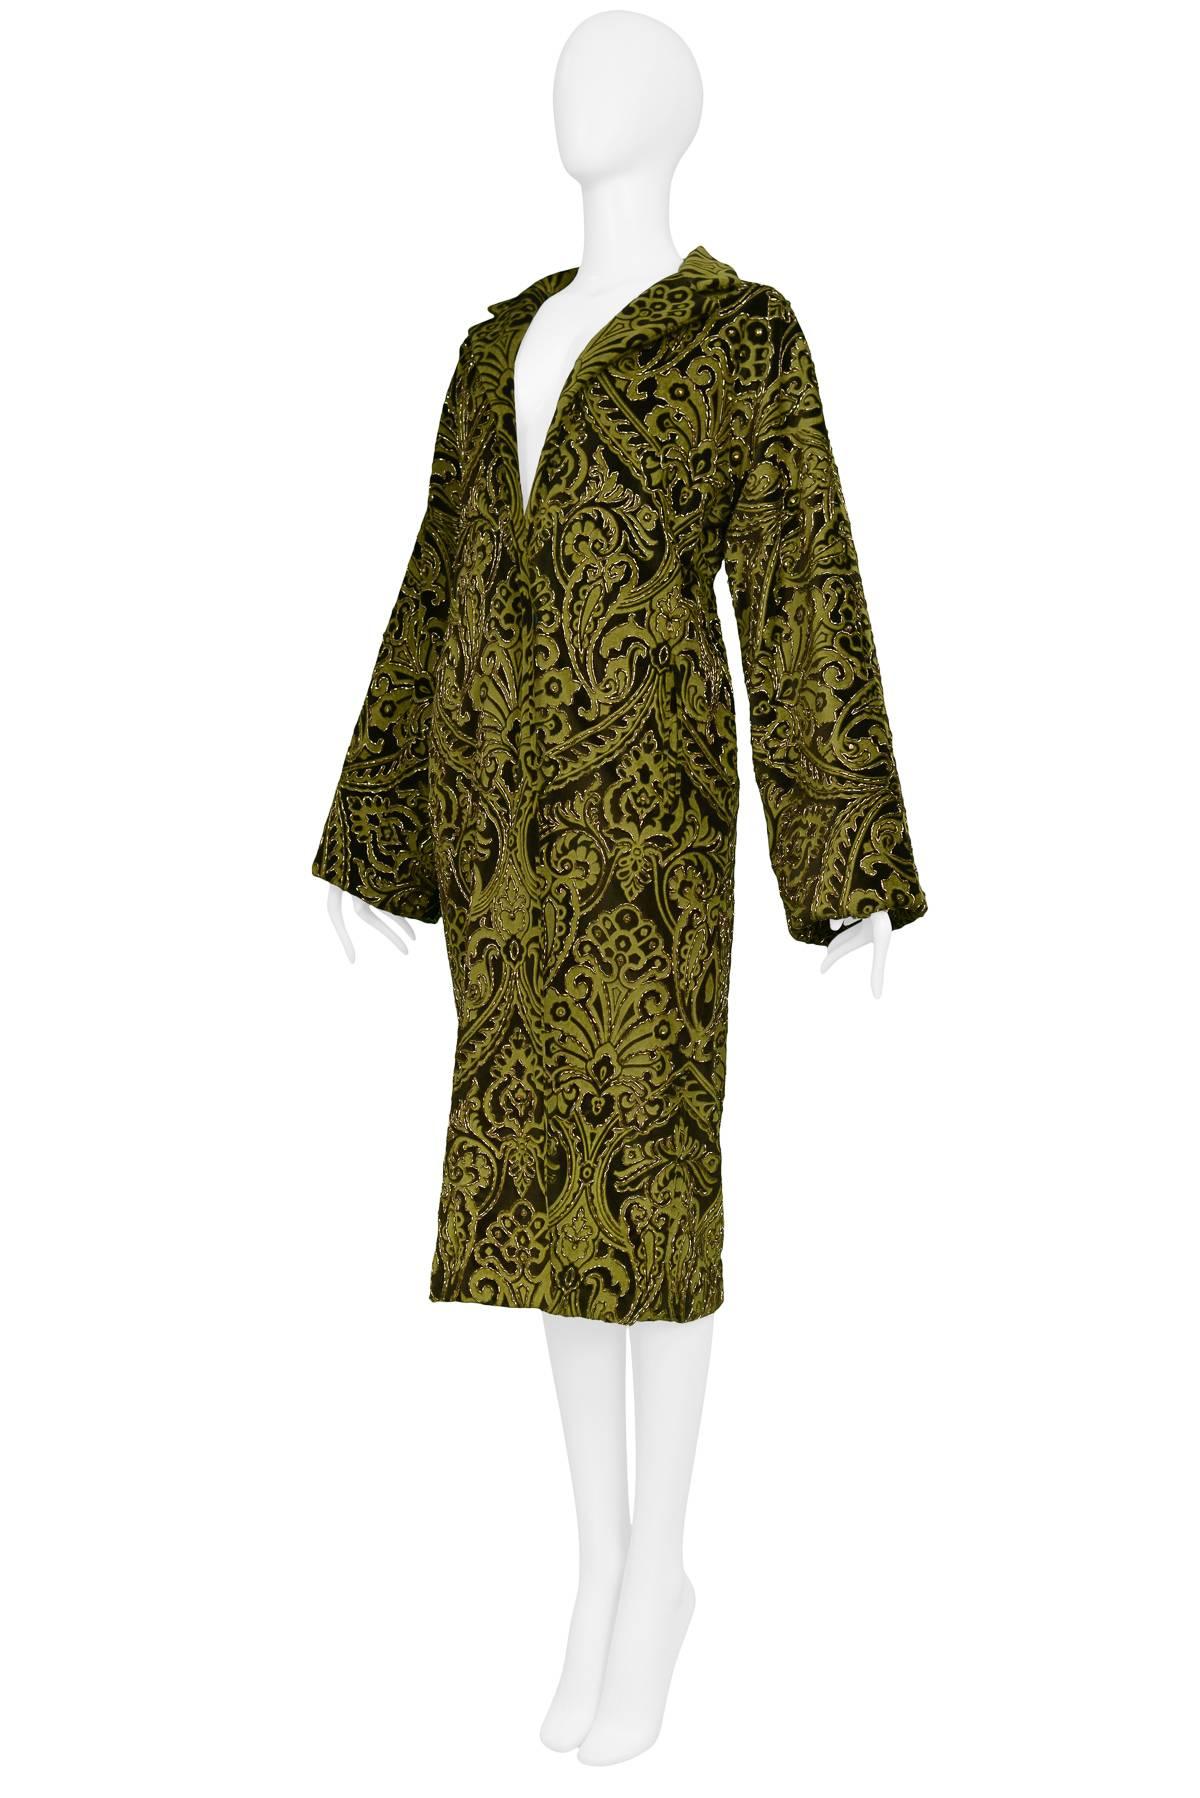 Dolce & Gabbana Important Velvet Beaded Coat  1